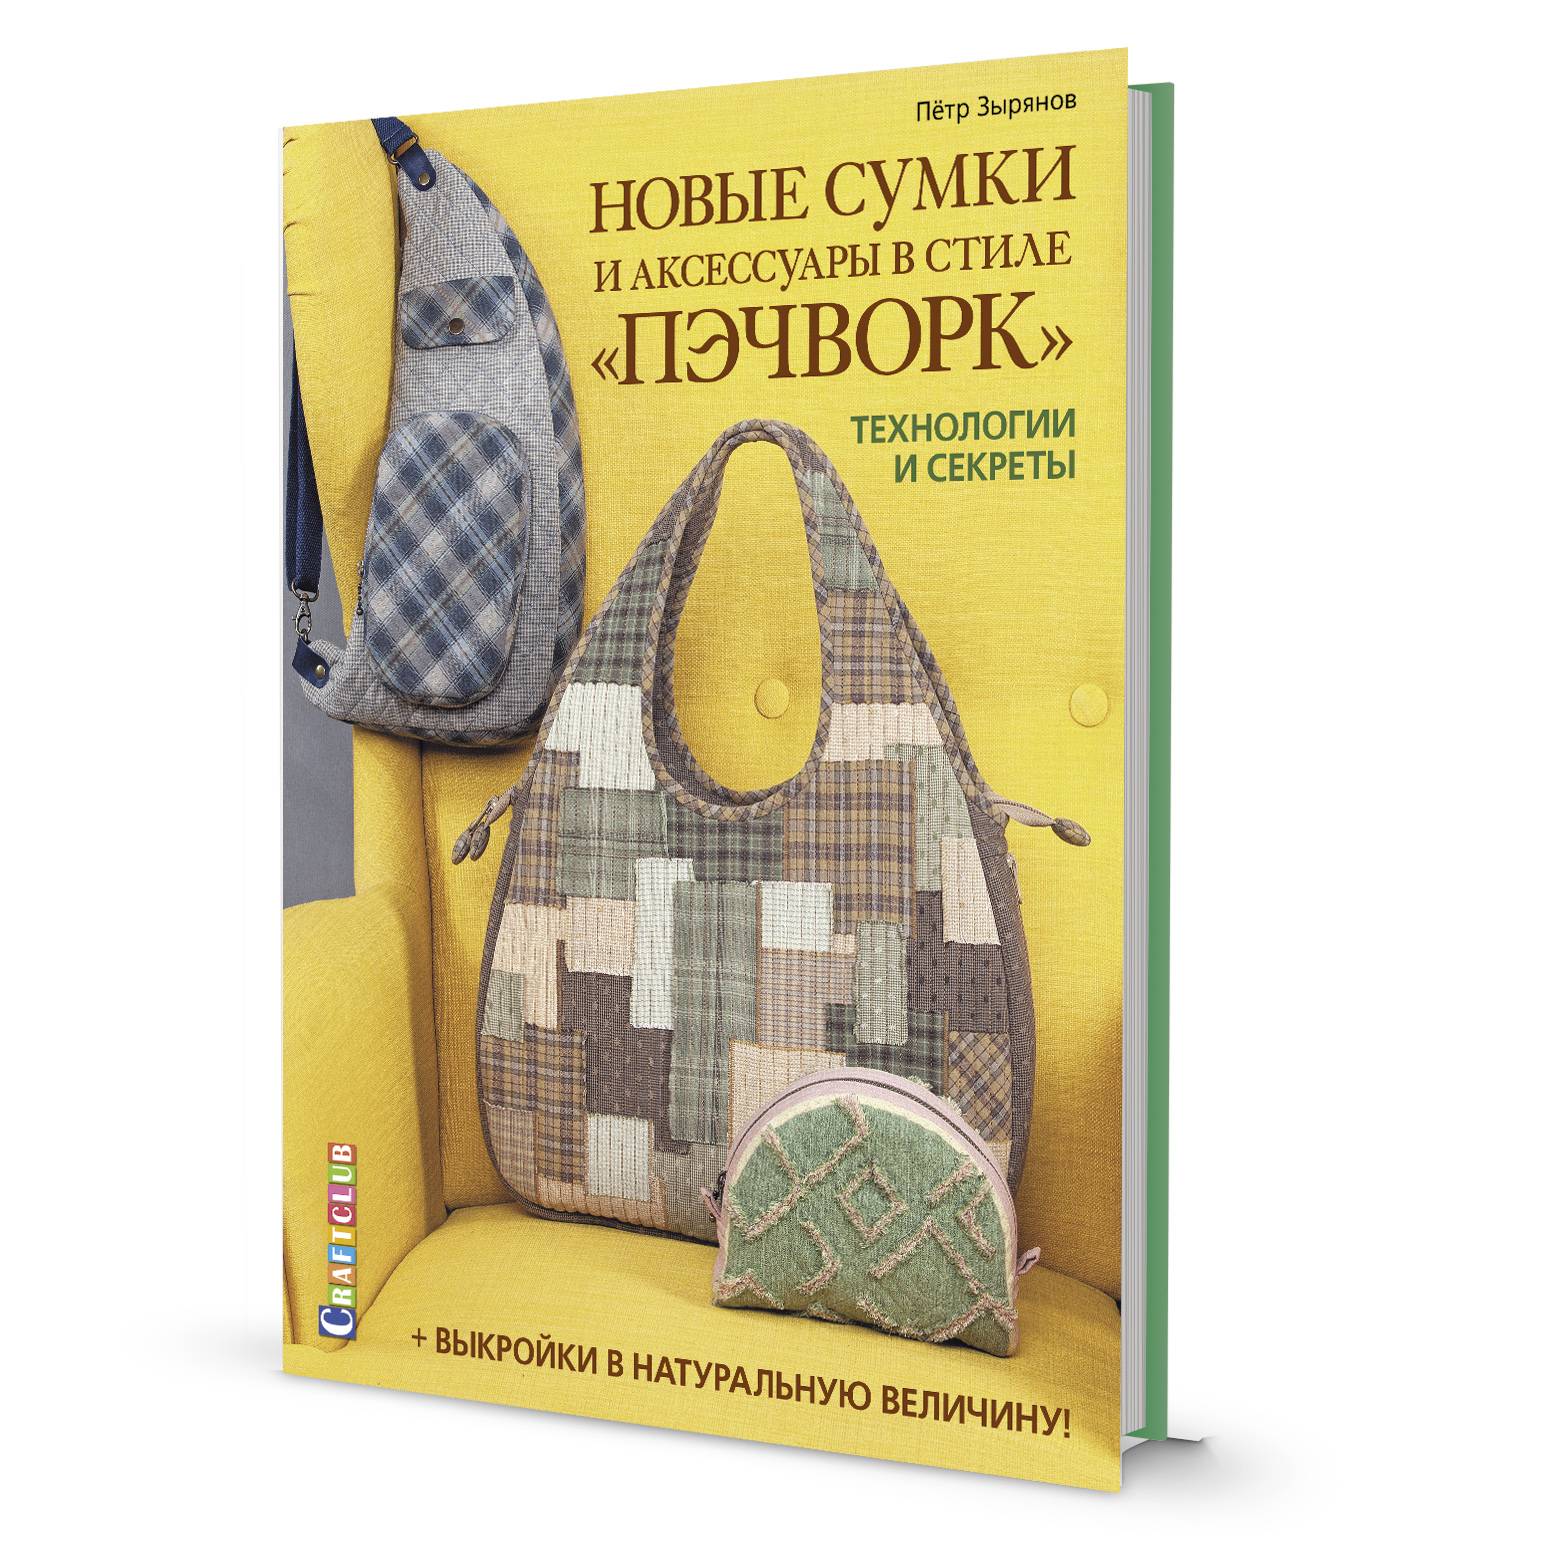 Книга Пэчворк и квилтинг - читать онлайн, бесплатно. Автор: Мария Кольская